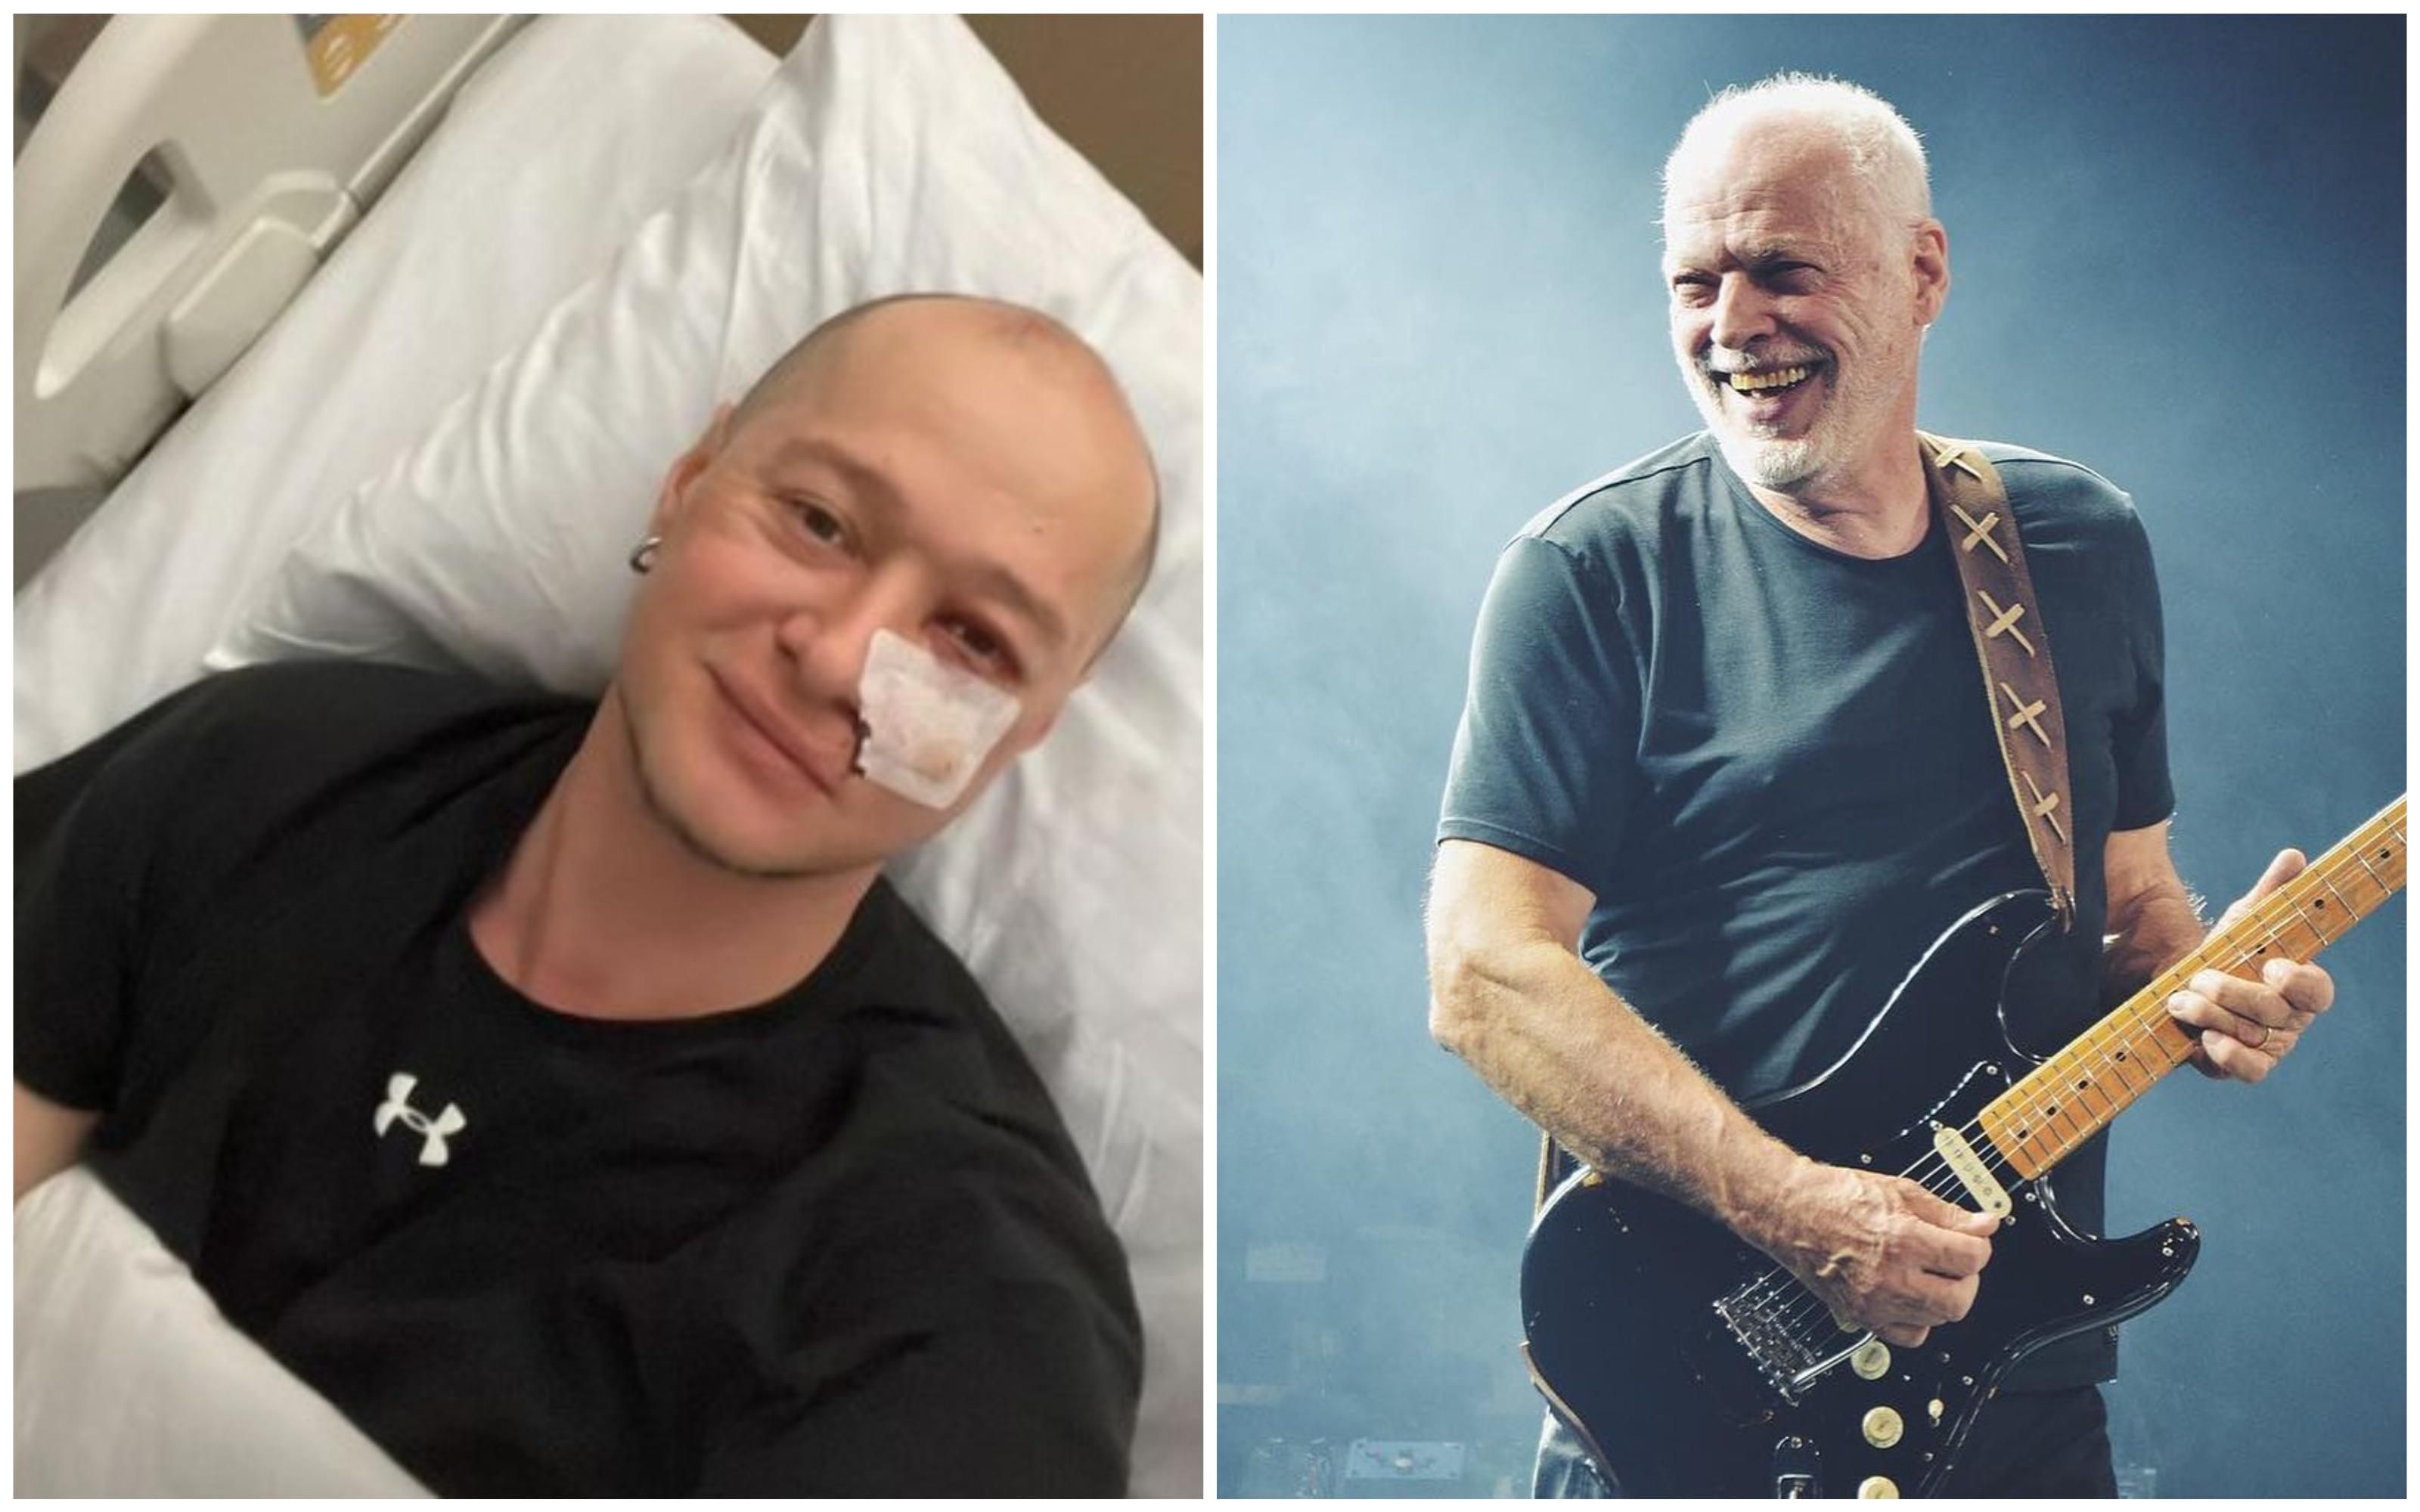 "Мечты сбываются": раненый Андрей Хливнюк пообщался со звездой Pink Floyd - Showbiz